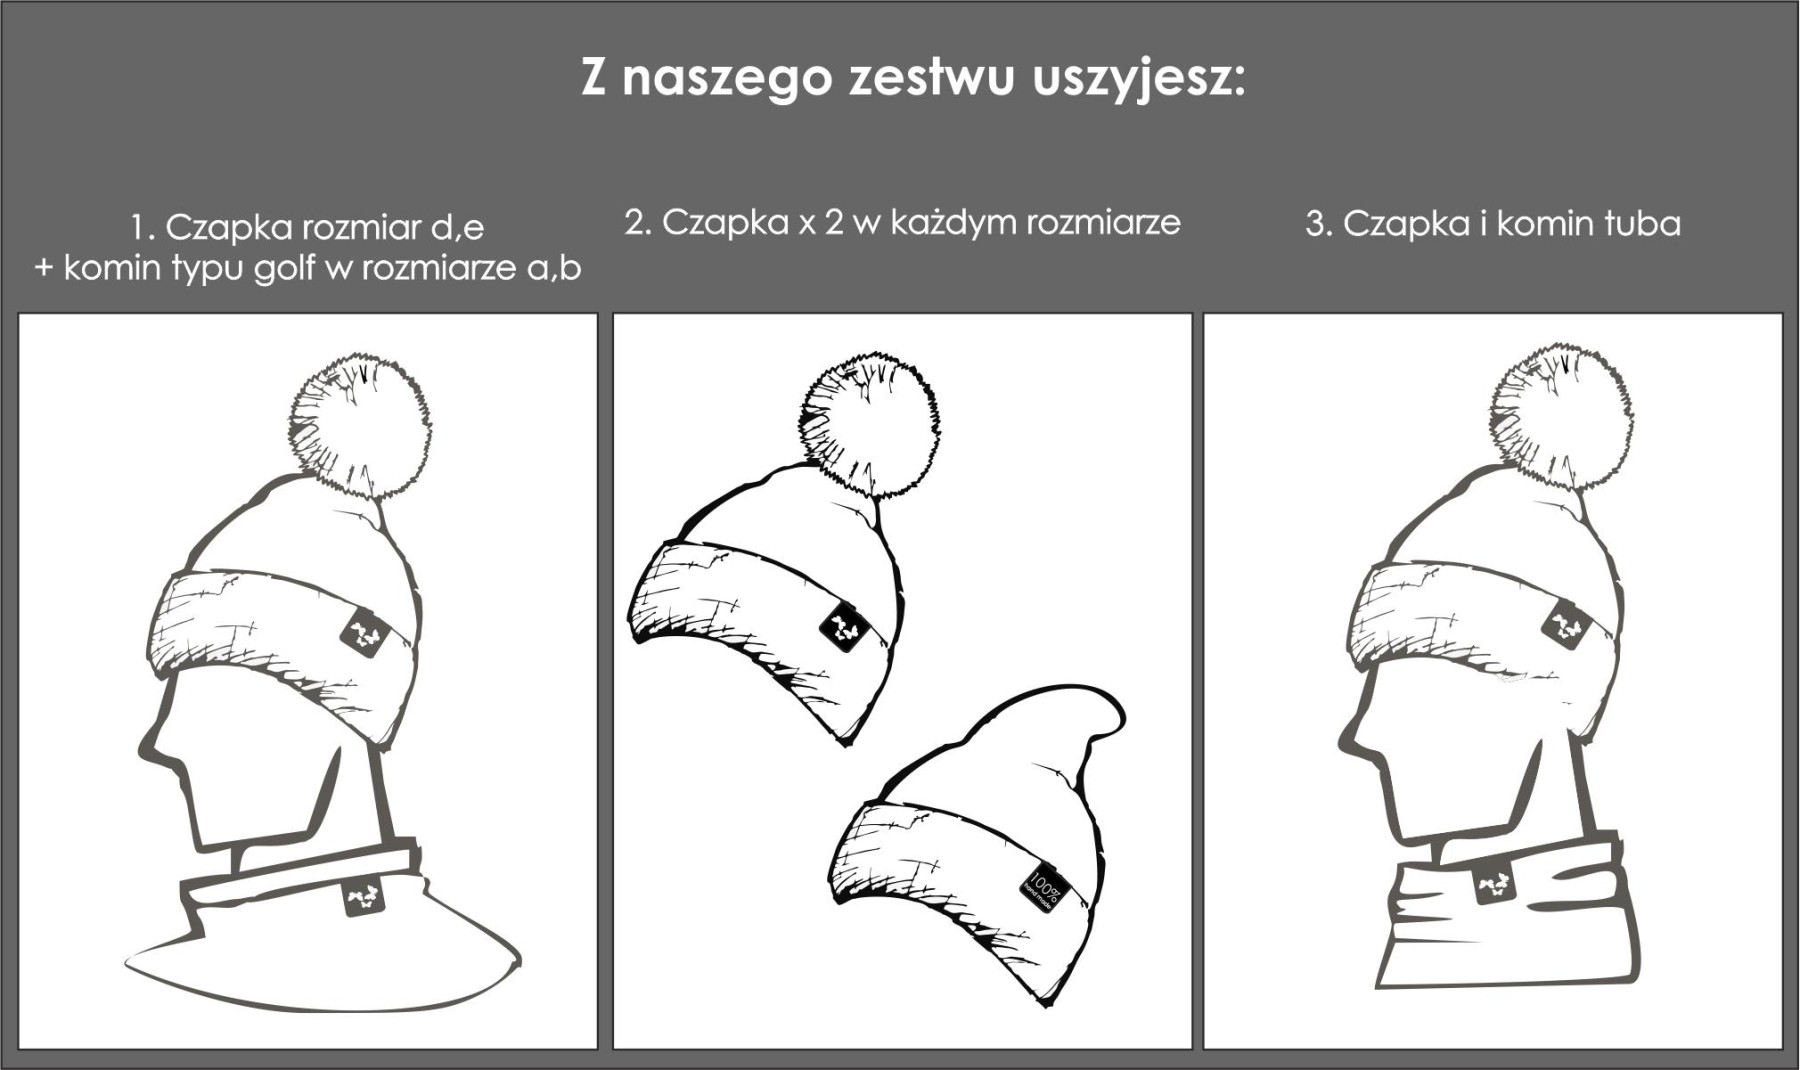 CZERWONY - Zestaw kreatywny do uszycia czapki i komina